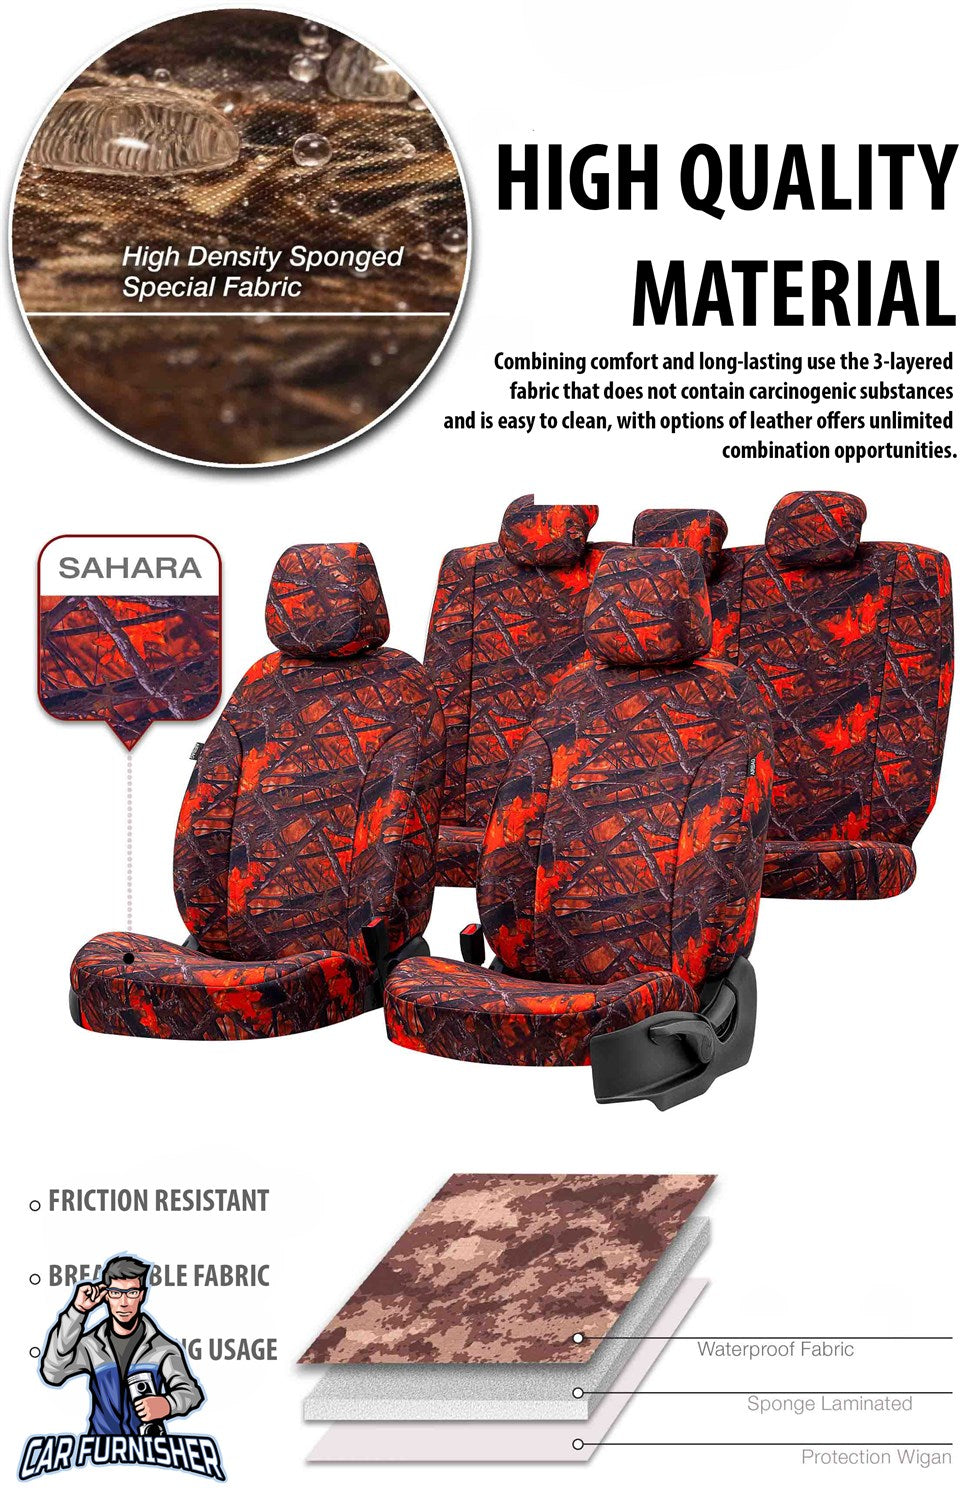 Volkswagen Transporter Seat Cover Camouflage Waterproof Design Montblanc Camo Waterproof Fabric